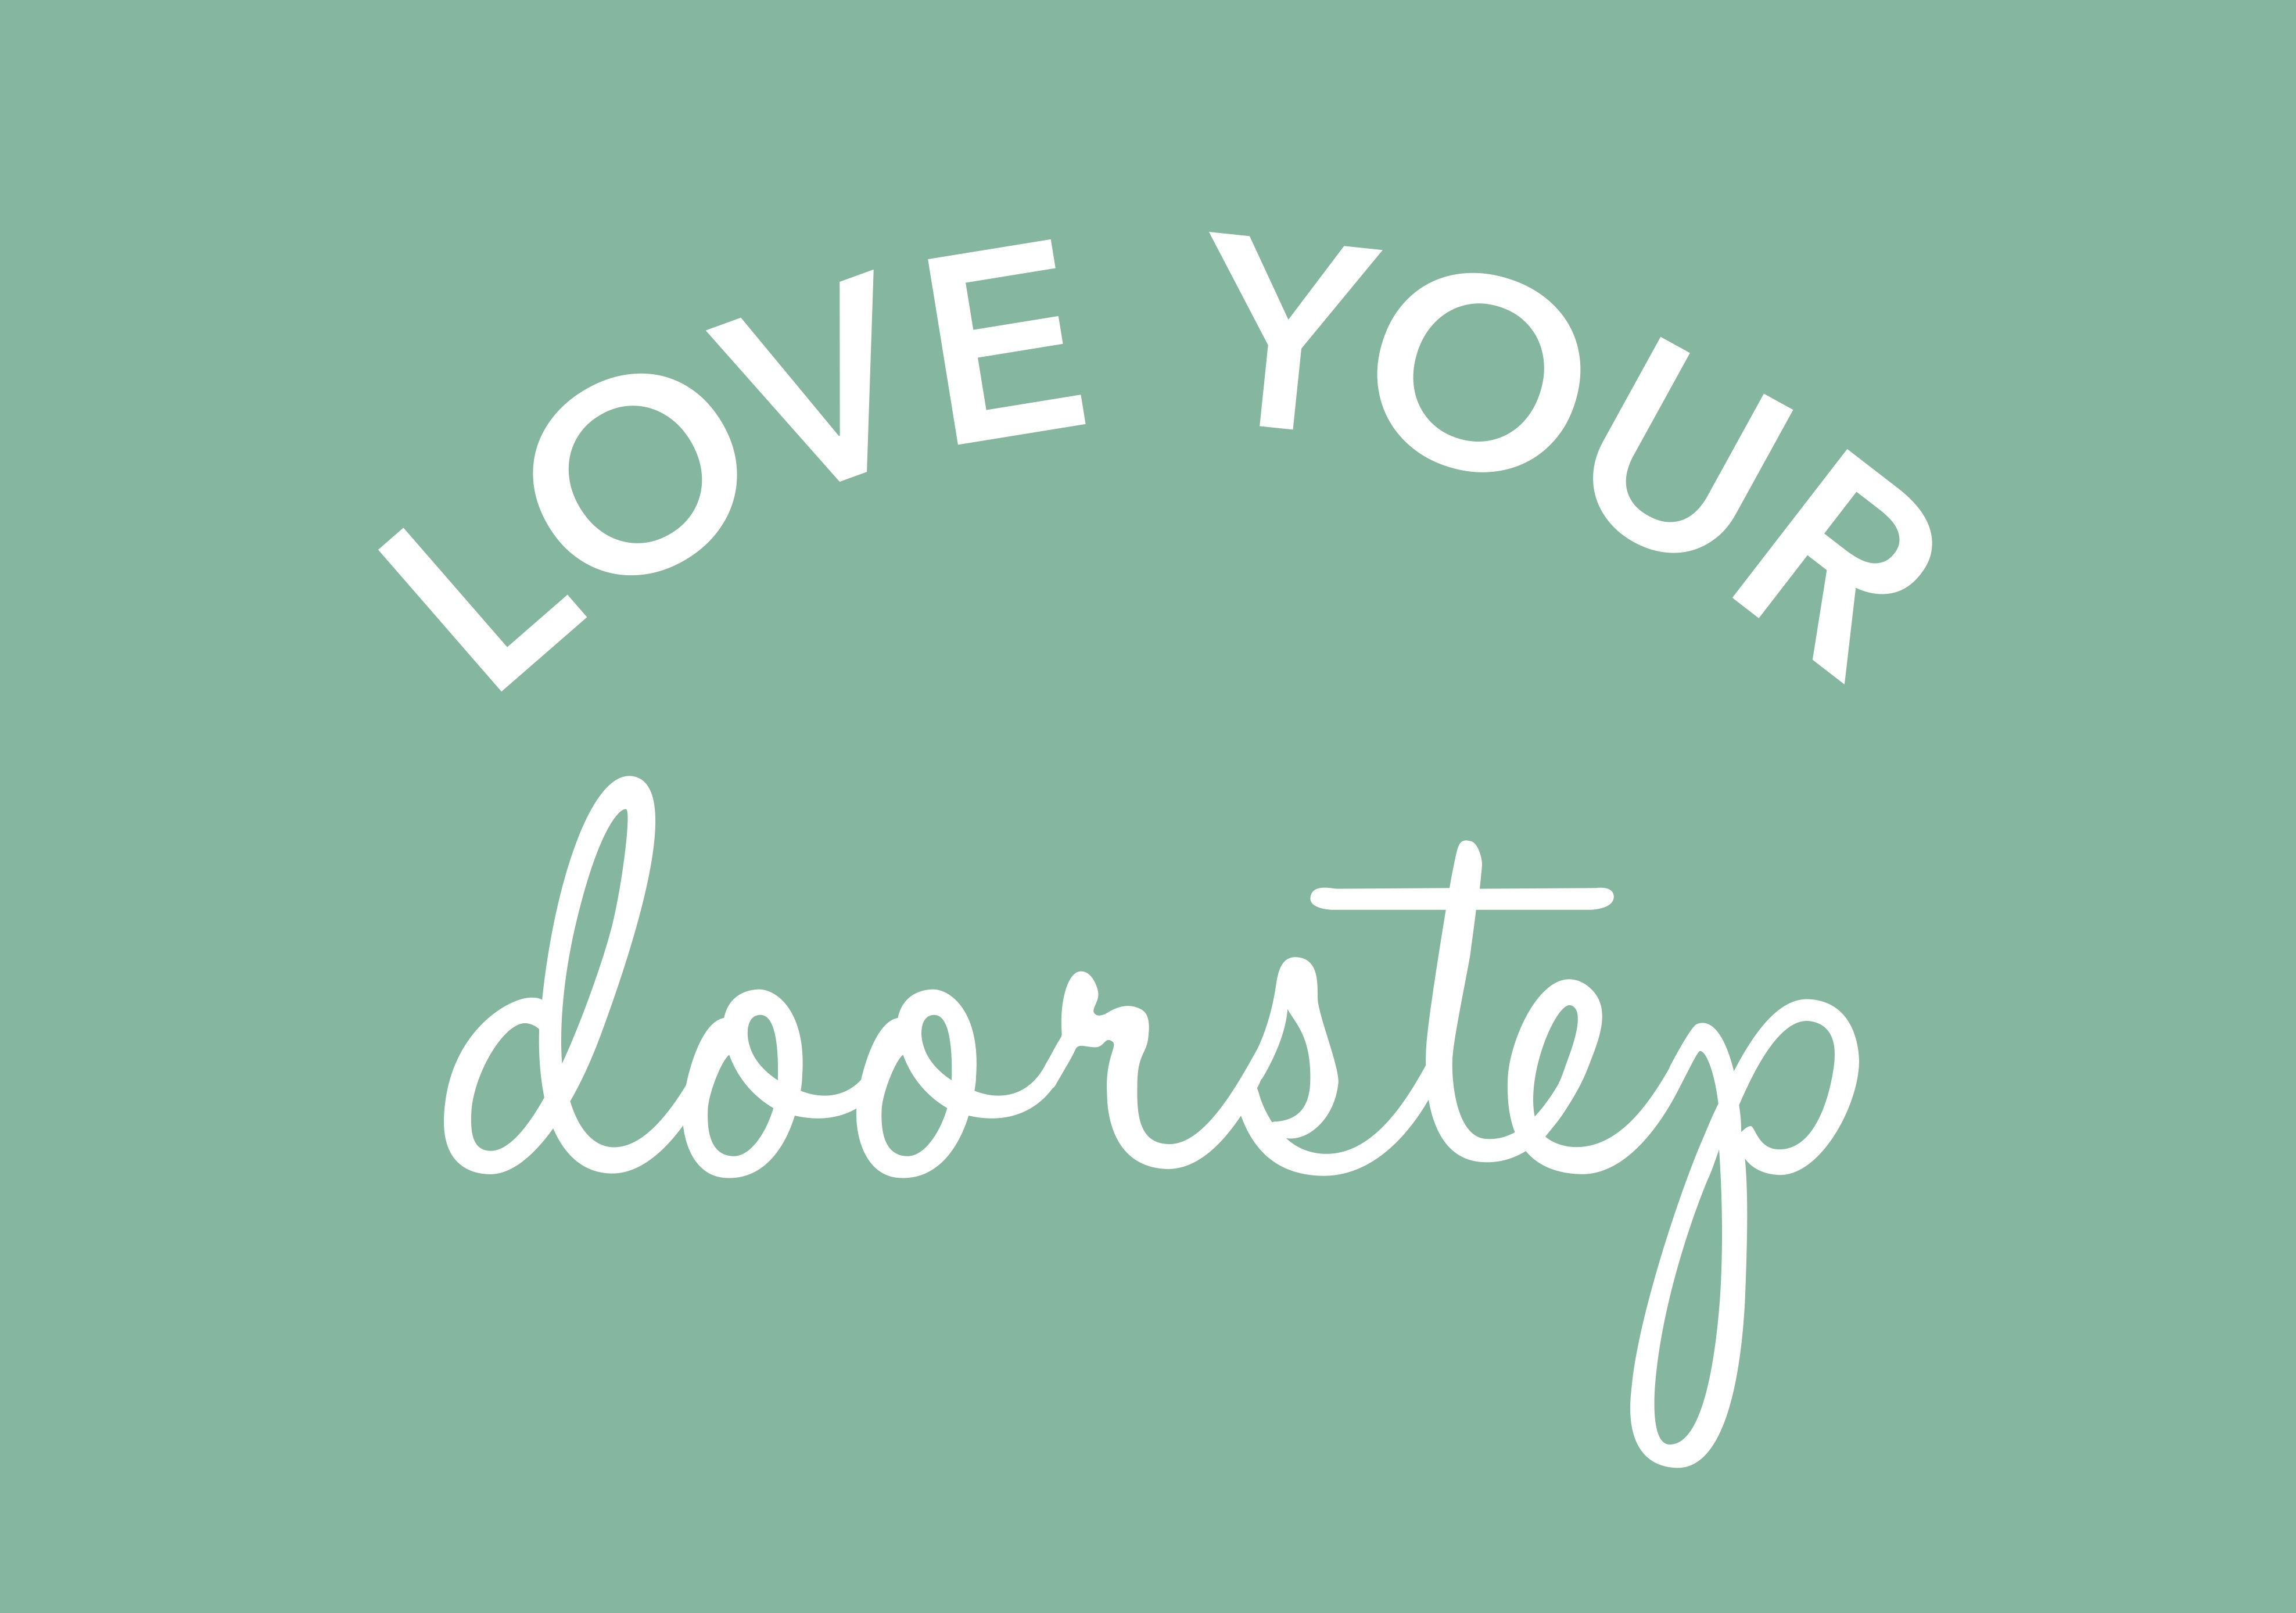 Love Your Doorstep